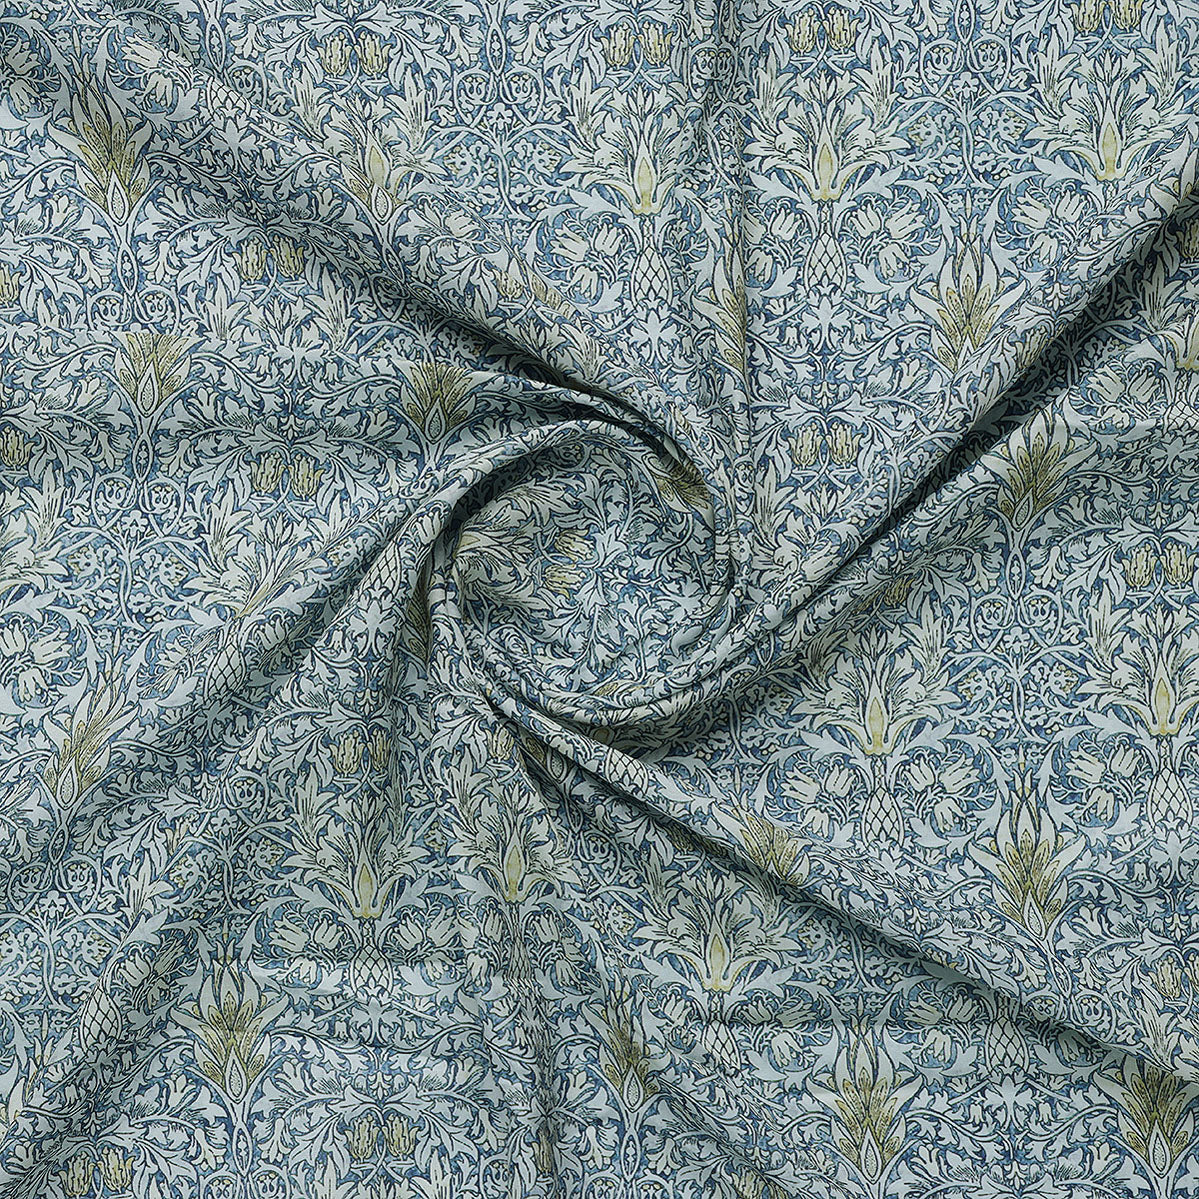 Damask Patterns On Yukon Gold Digital Printed Fabric - Kora Silk